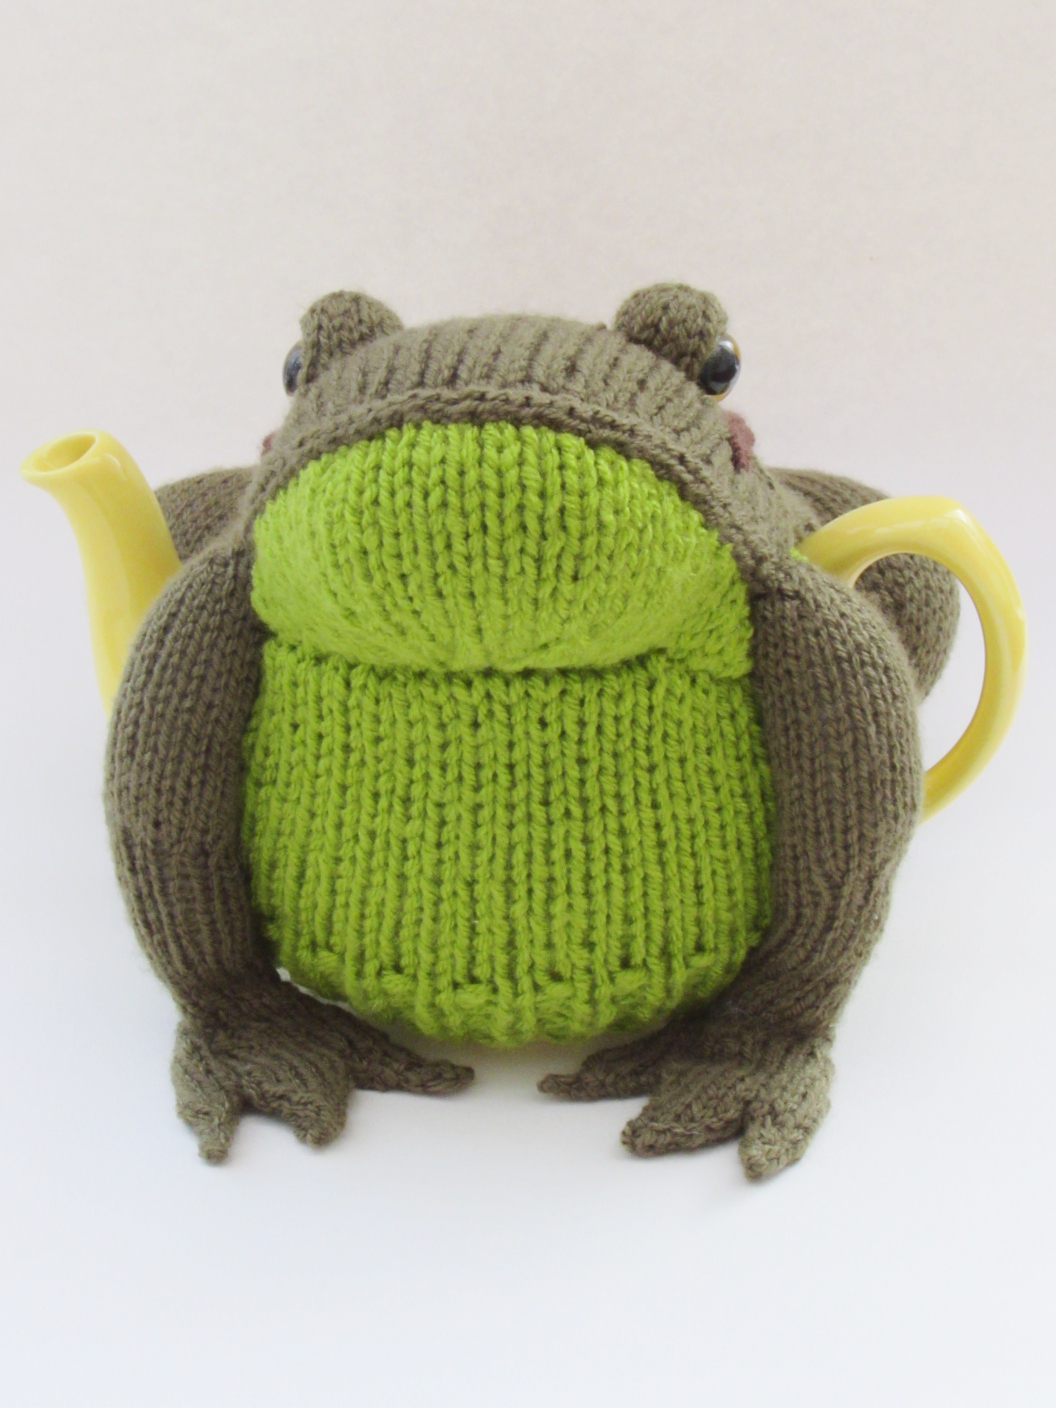 Frog knitting pattern